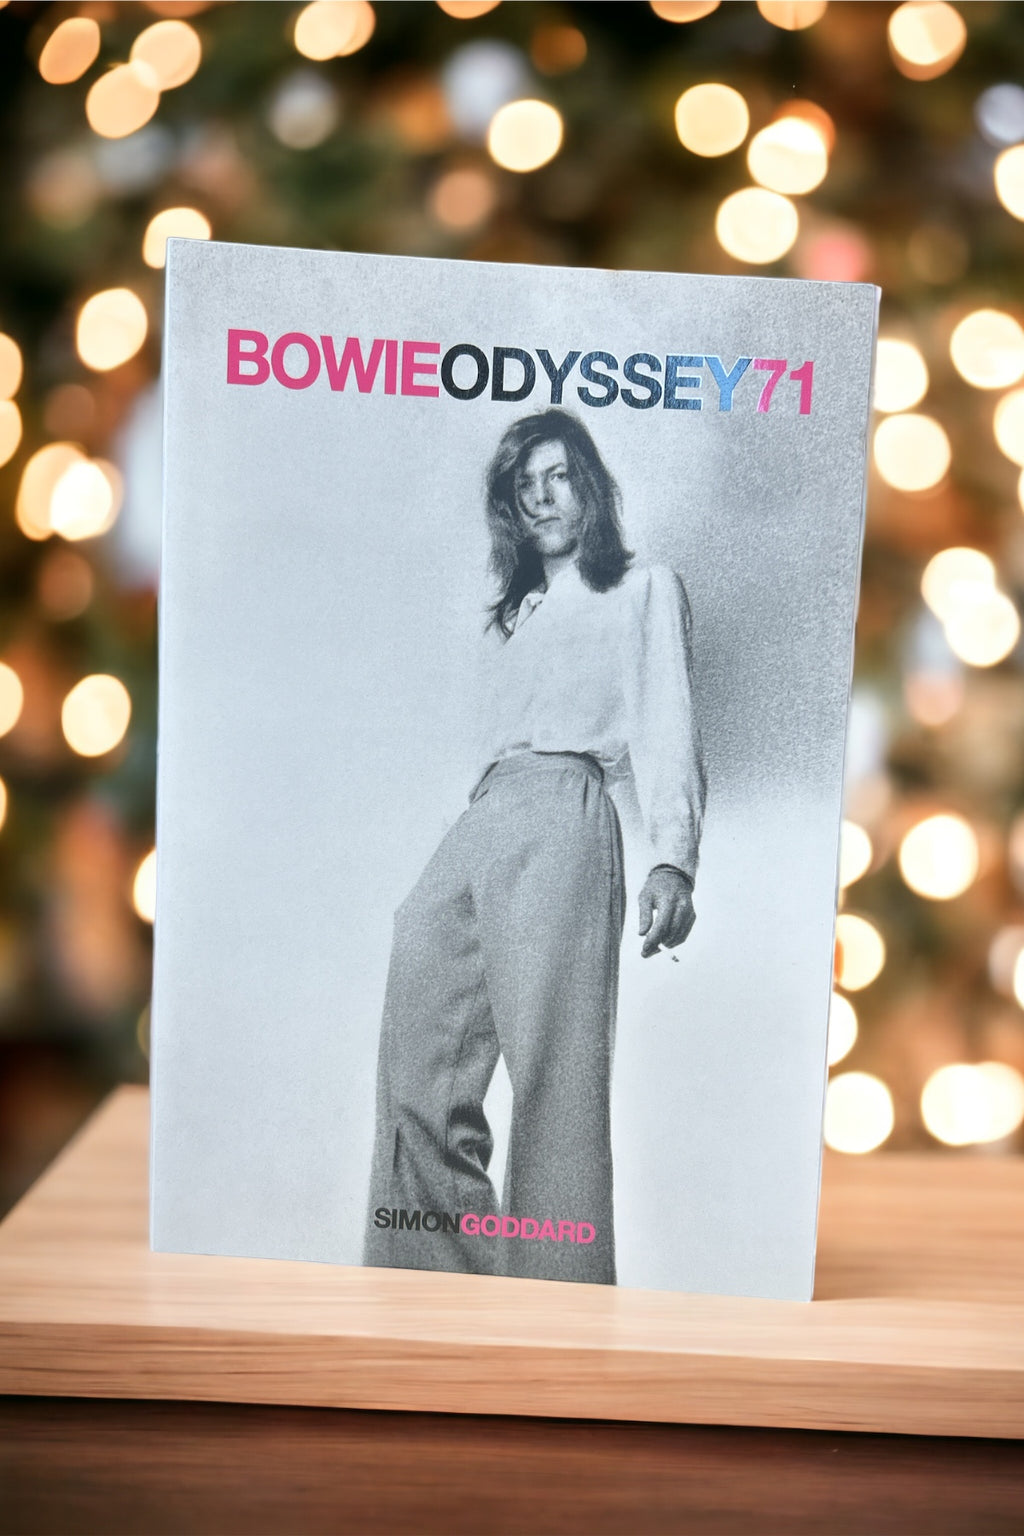 David Bowie - Bowie Odyssey 71 by Simon Goddard